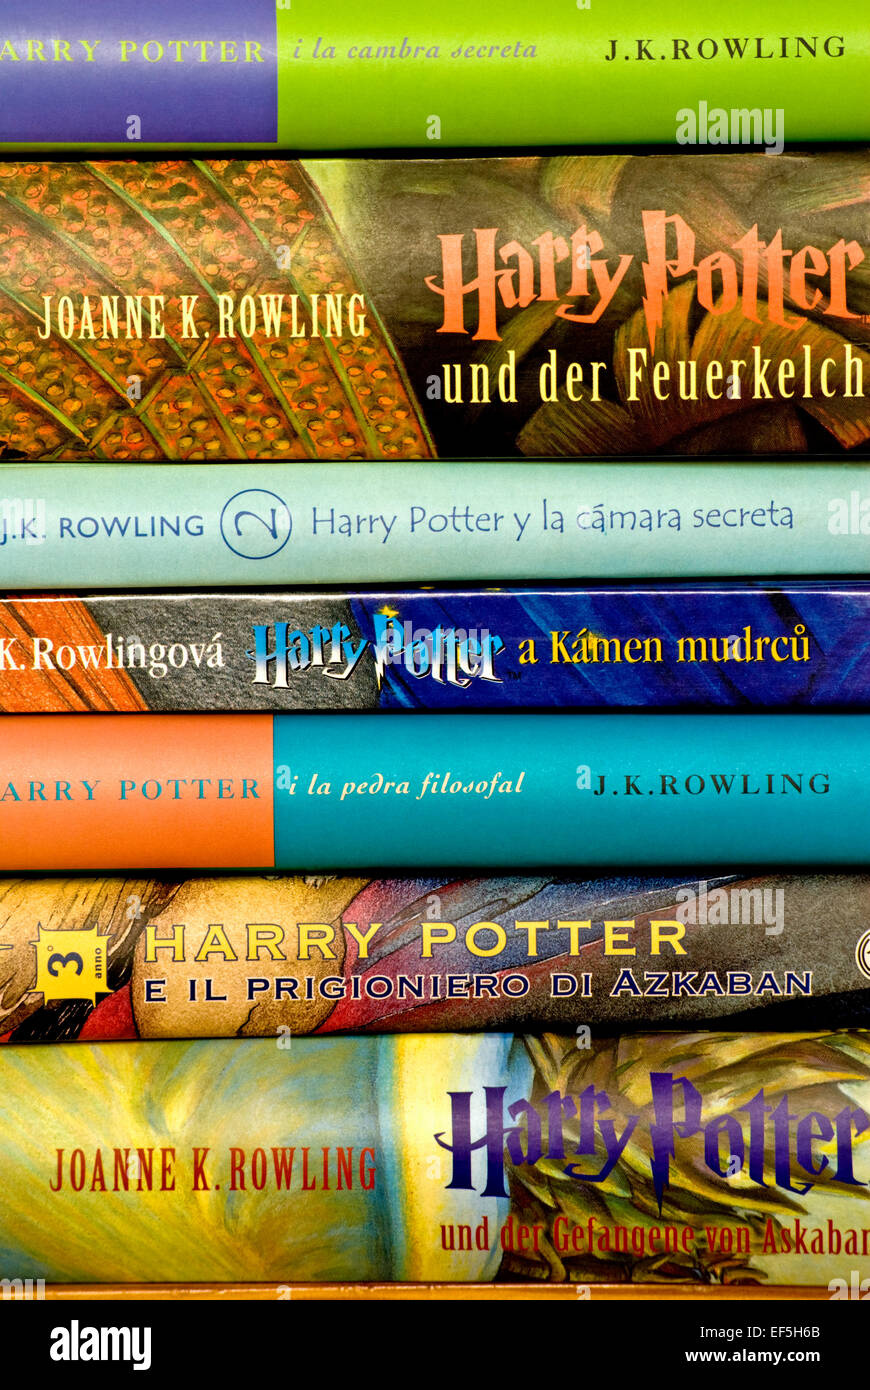 J. K. Rowling los libros de Harry Potter en traducciones